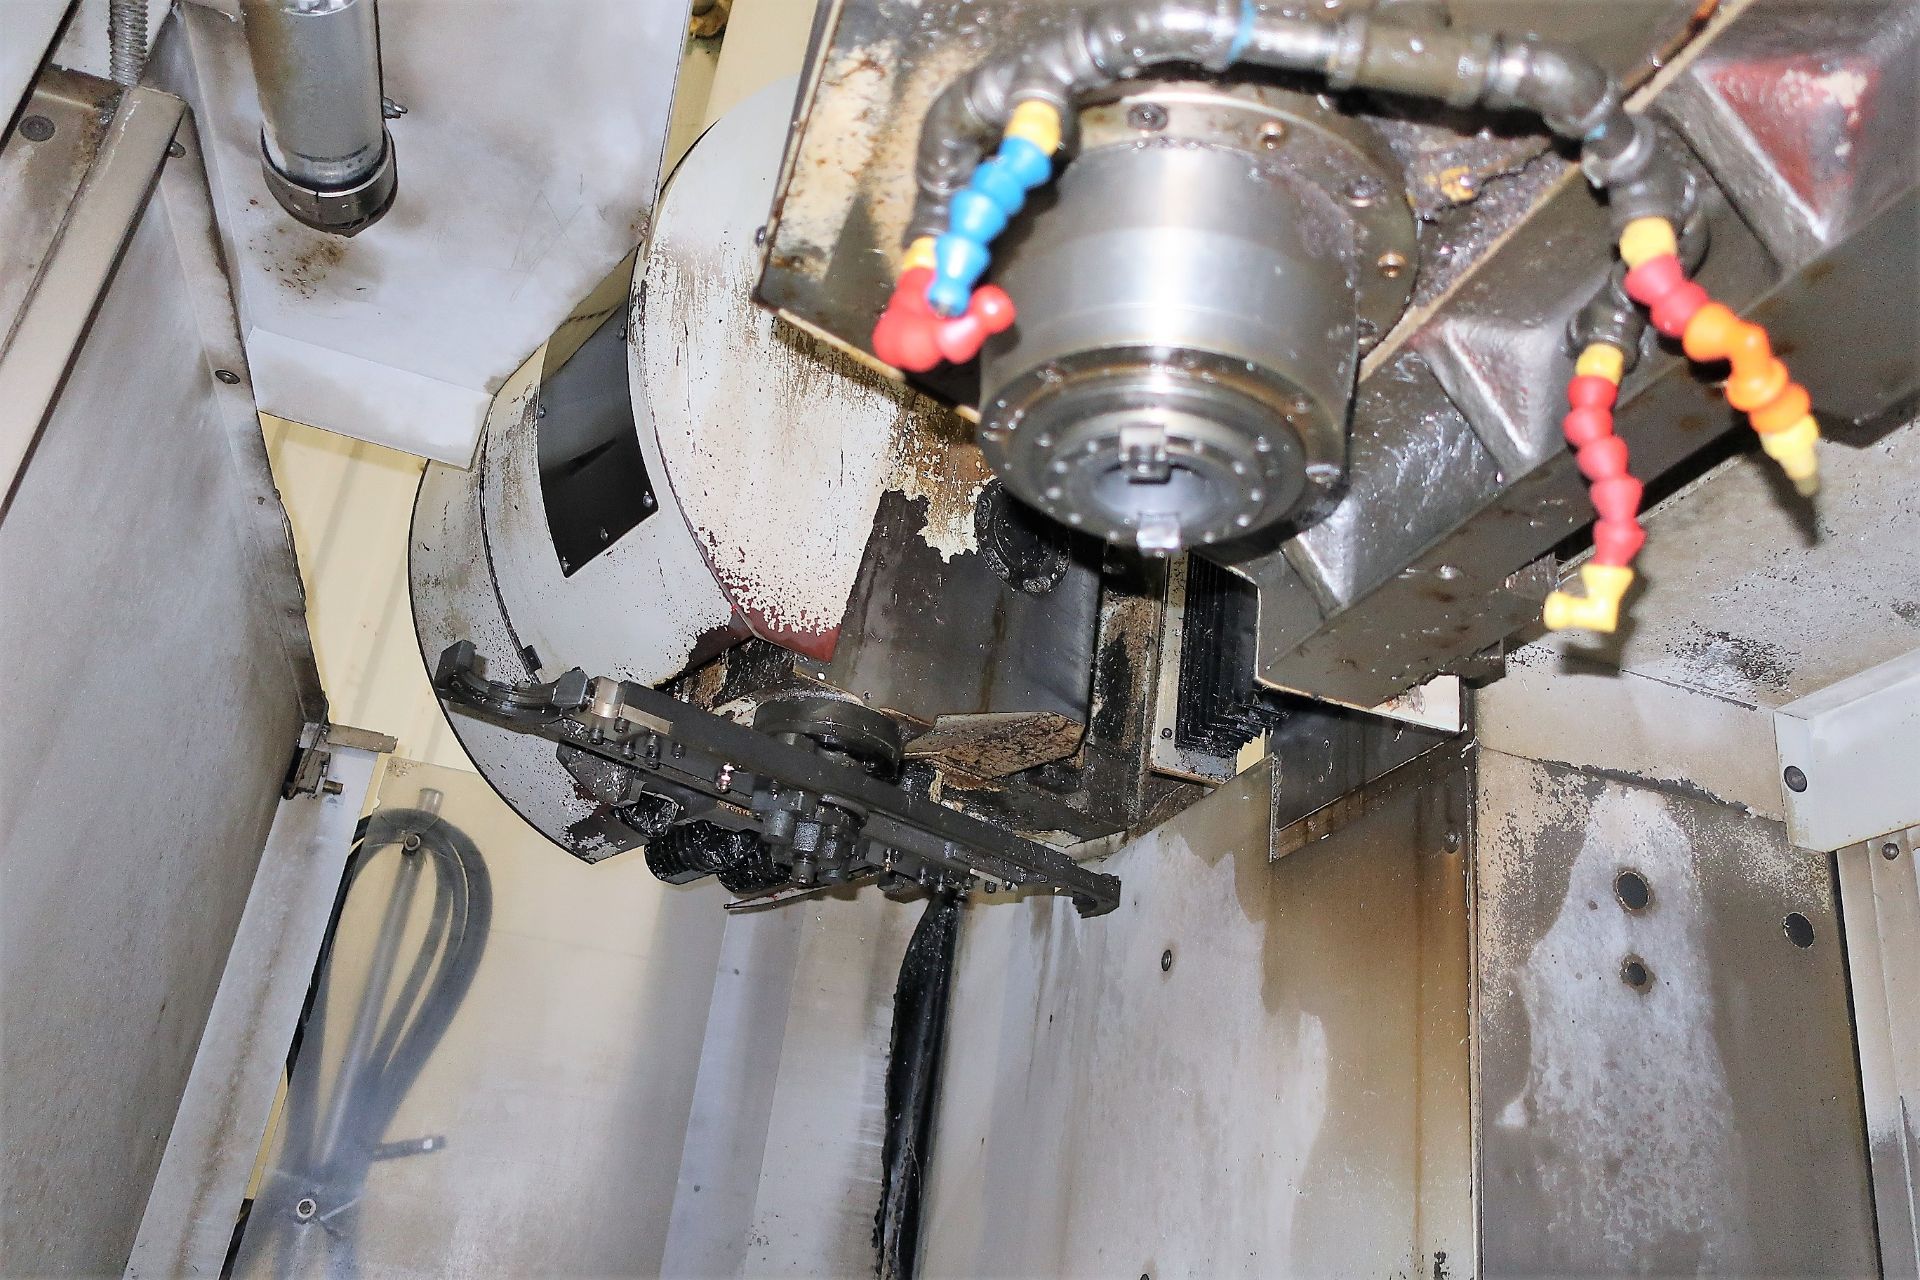 MILLTRONICS TT24 3-AXIS CNC VERTICAL MACHINING CENTER W/PALLET CHANGER, NEW 2012 - Image 4 of 10